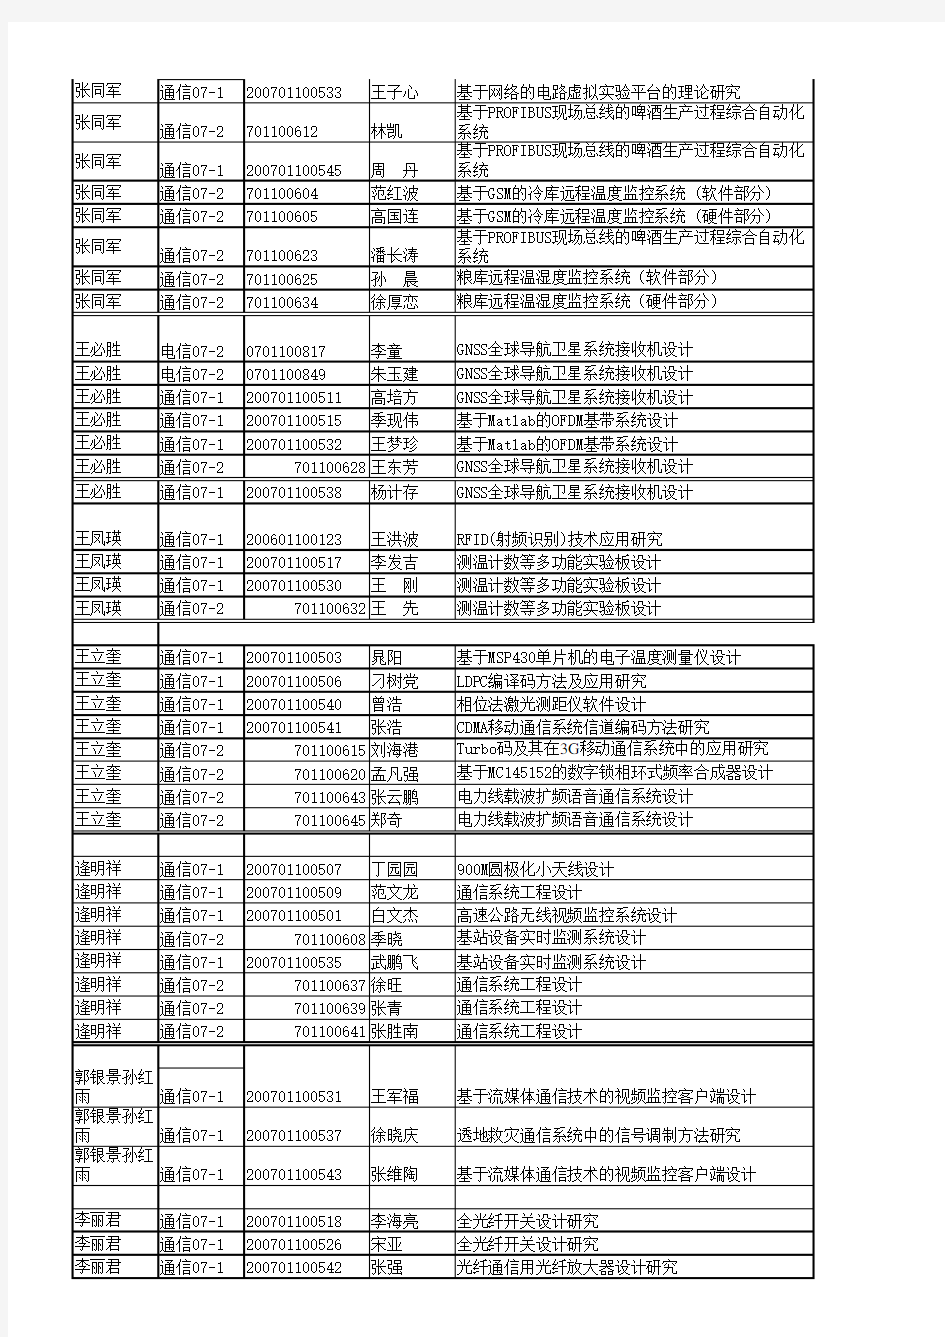 山东科技大学信电学院 2011届毕业设计选题结果一览表(以指导老师为单位汇总)